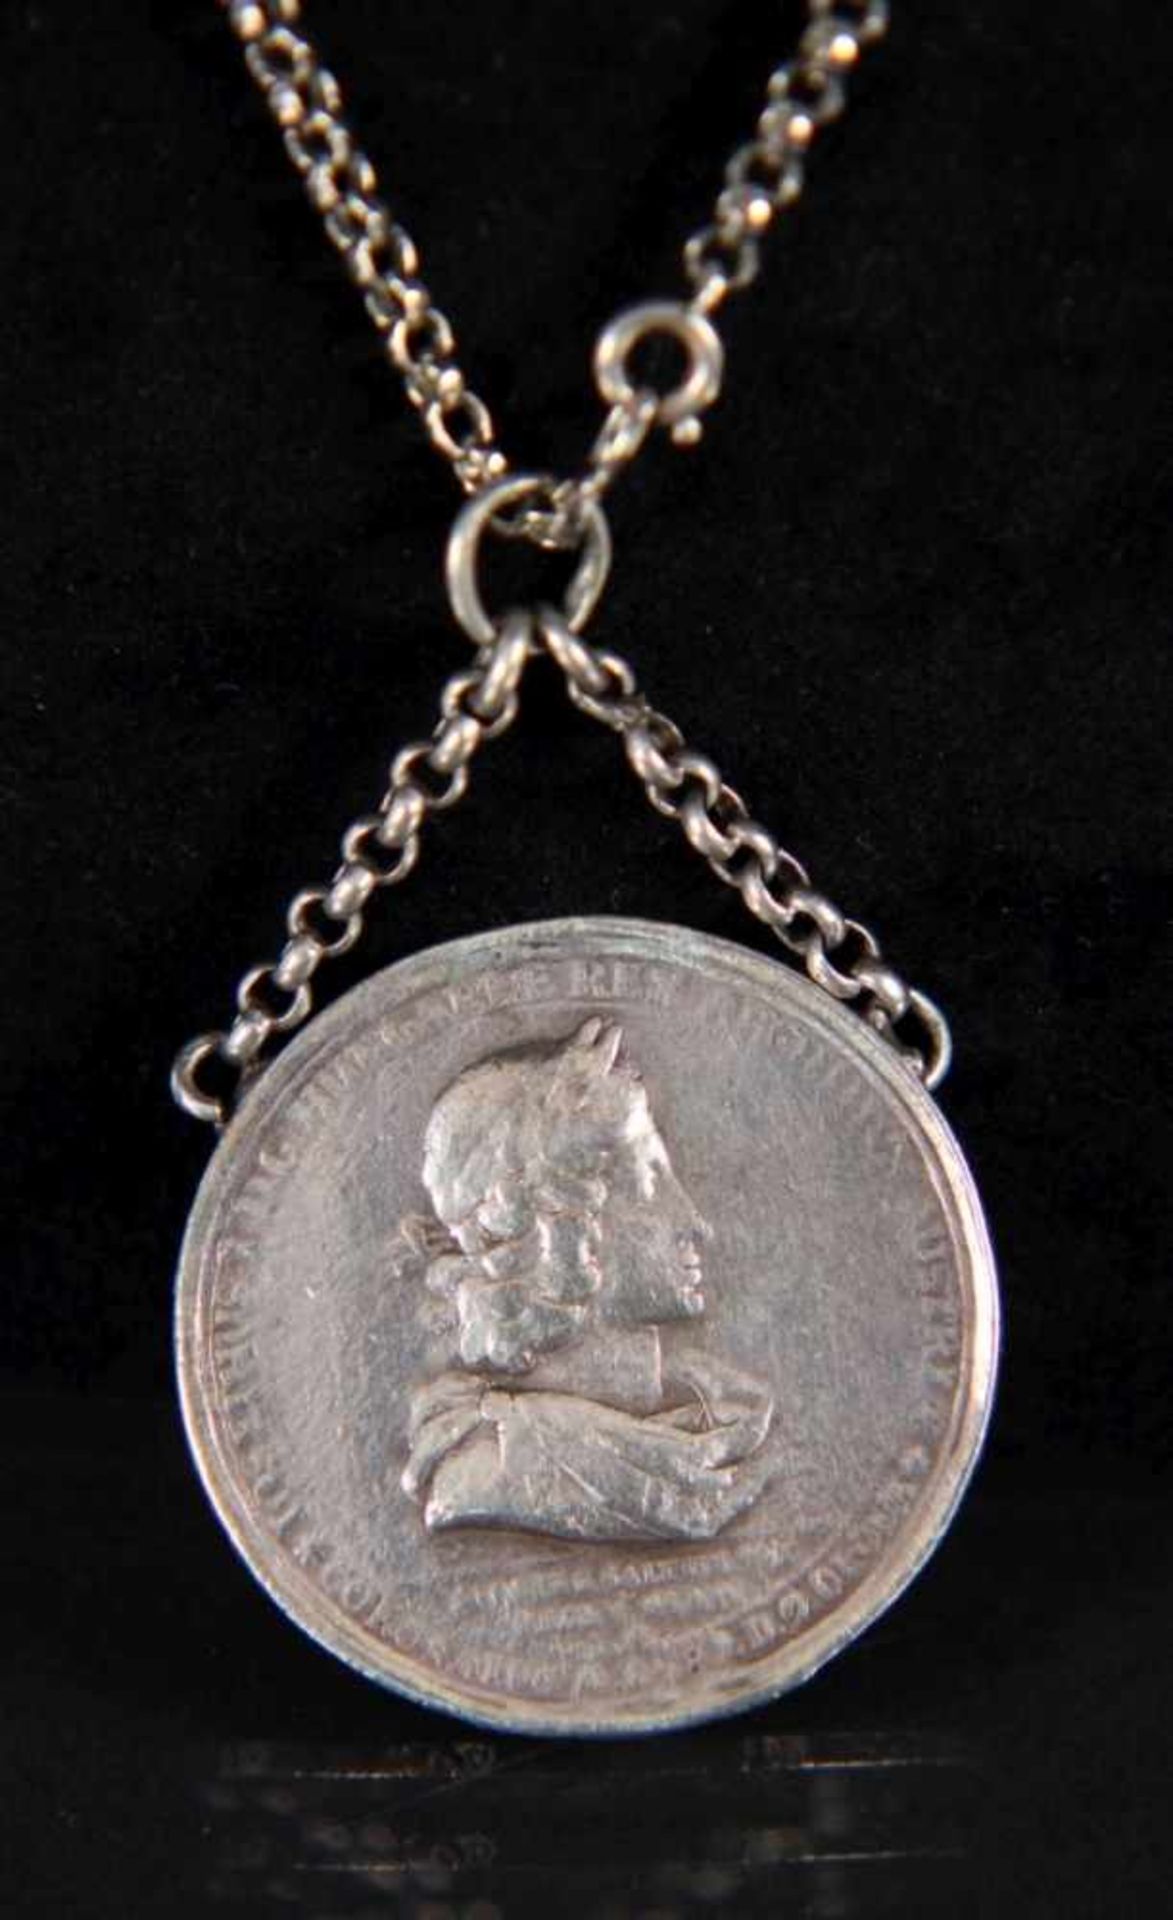 HALSKETTE MIT MEDAILLE UND KROPFKETTE Österreich um 1910 Silber, mit Medaille Kaiser Joseph I.